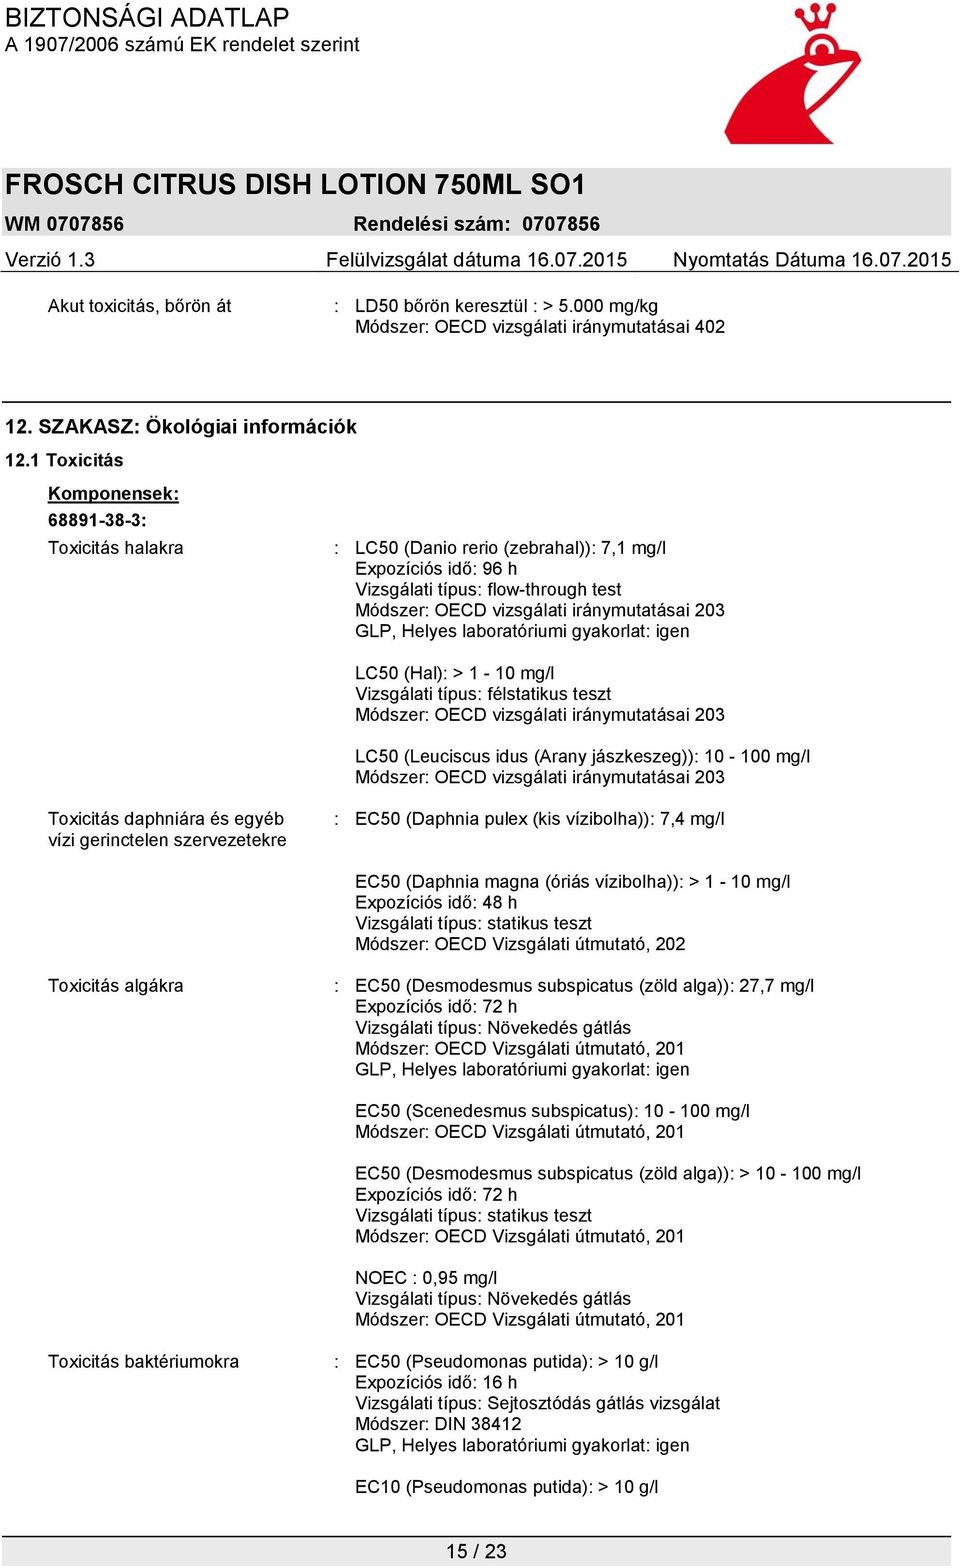 LC50 (Hal): > 1-10 mg/l Vizsgálati típus: félstatikus teszt LC50 (Leuciscus idus (Arany jászkeszeg)): 10-100 mg/l : EC50 (Daphnia pulex (kis vízibolha)): 7,4 mg/l EC50 (Daphnia magna (óriás